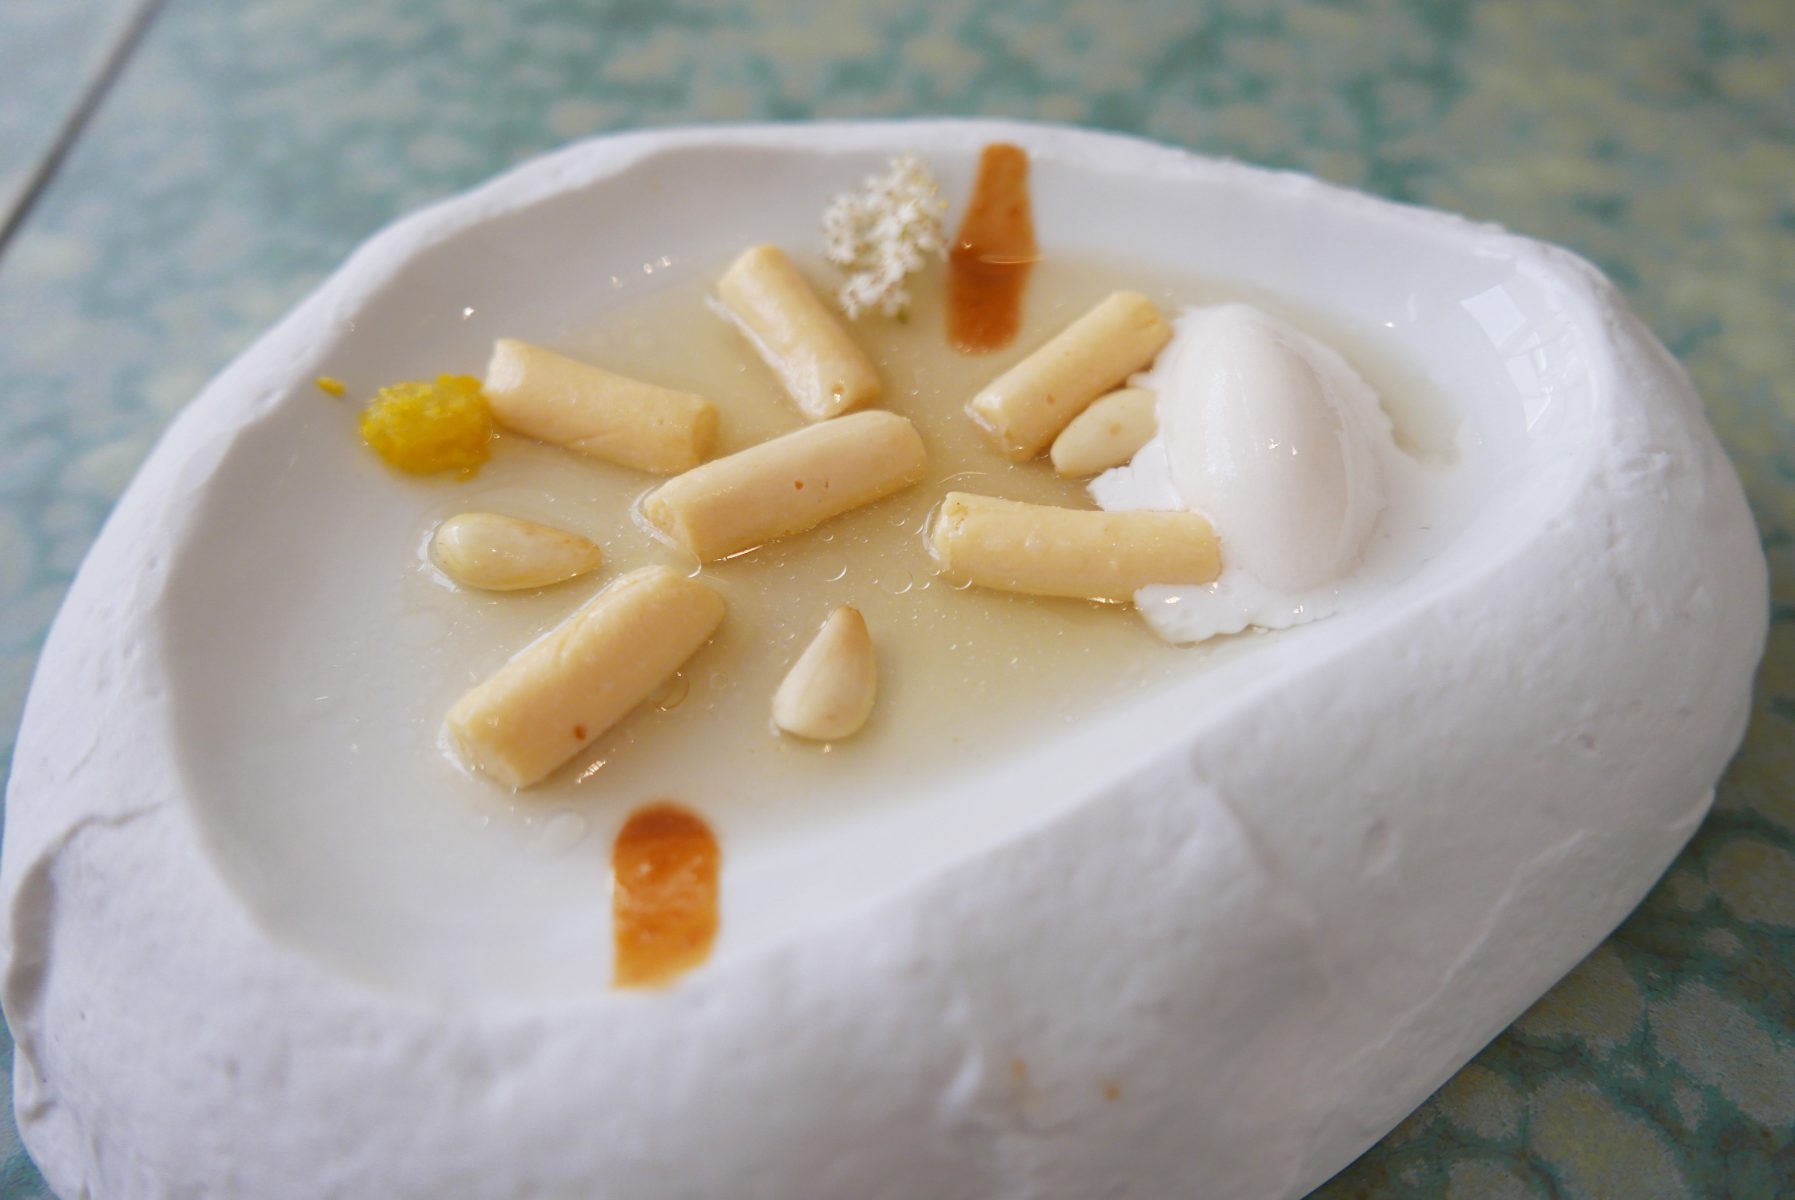 Almond cream gnocchi with elderflower and amber